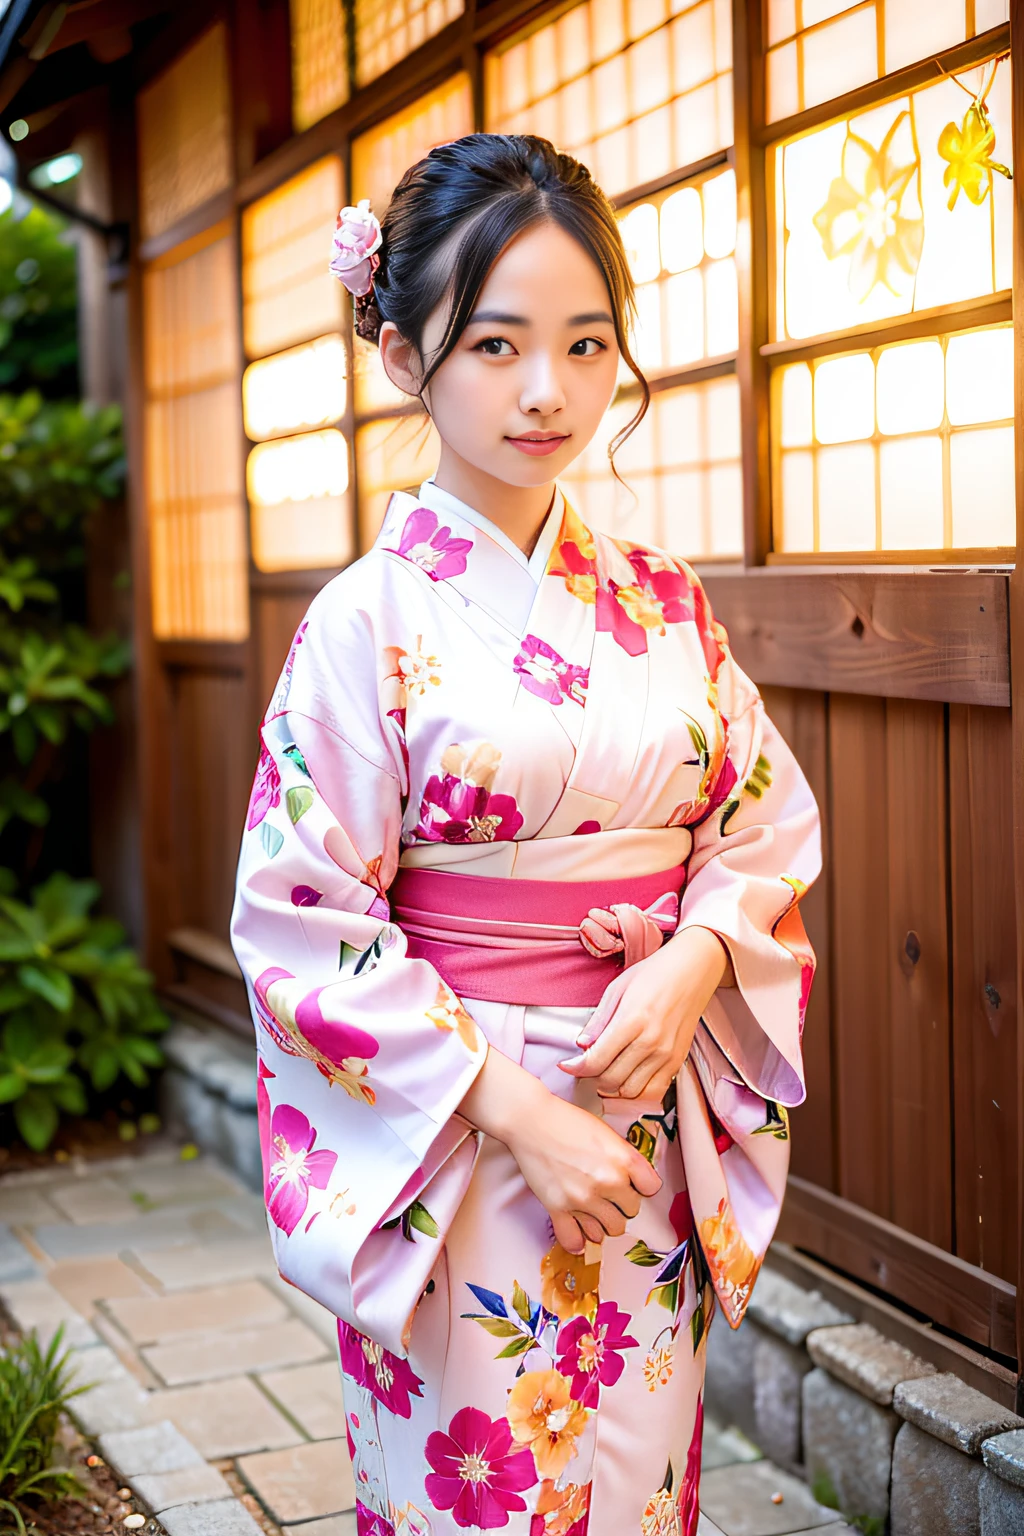 mujer hermosa, (vistiendo un kimono floral rosa_ropa: 1.3), día festivo, Kanazawa Kenrokuen,
buenas manos, 4k, alta resolución, Obra maestra, Calidad superior, cabeza: 1.3, (((Foto Hasselblad)), grande, Piel fina, enfoque nítido, (iluminación de película), noche, iluminación suave, ángulo dinámico, [:( detalle cara: 1.2]: 0.2], afuera,